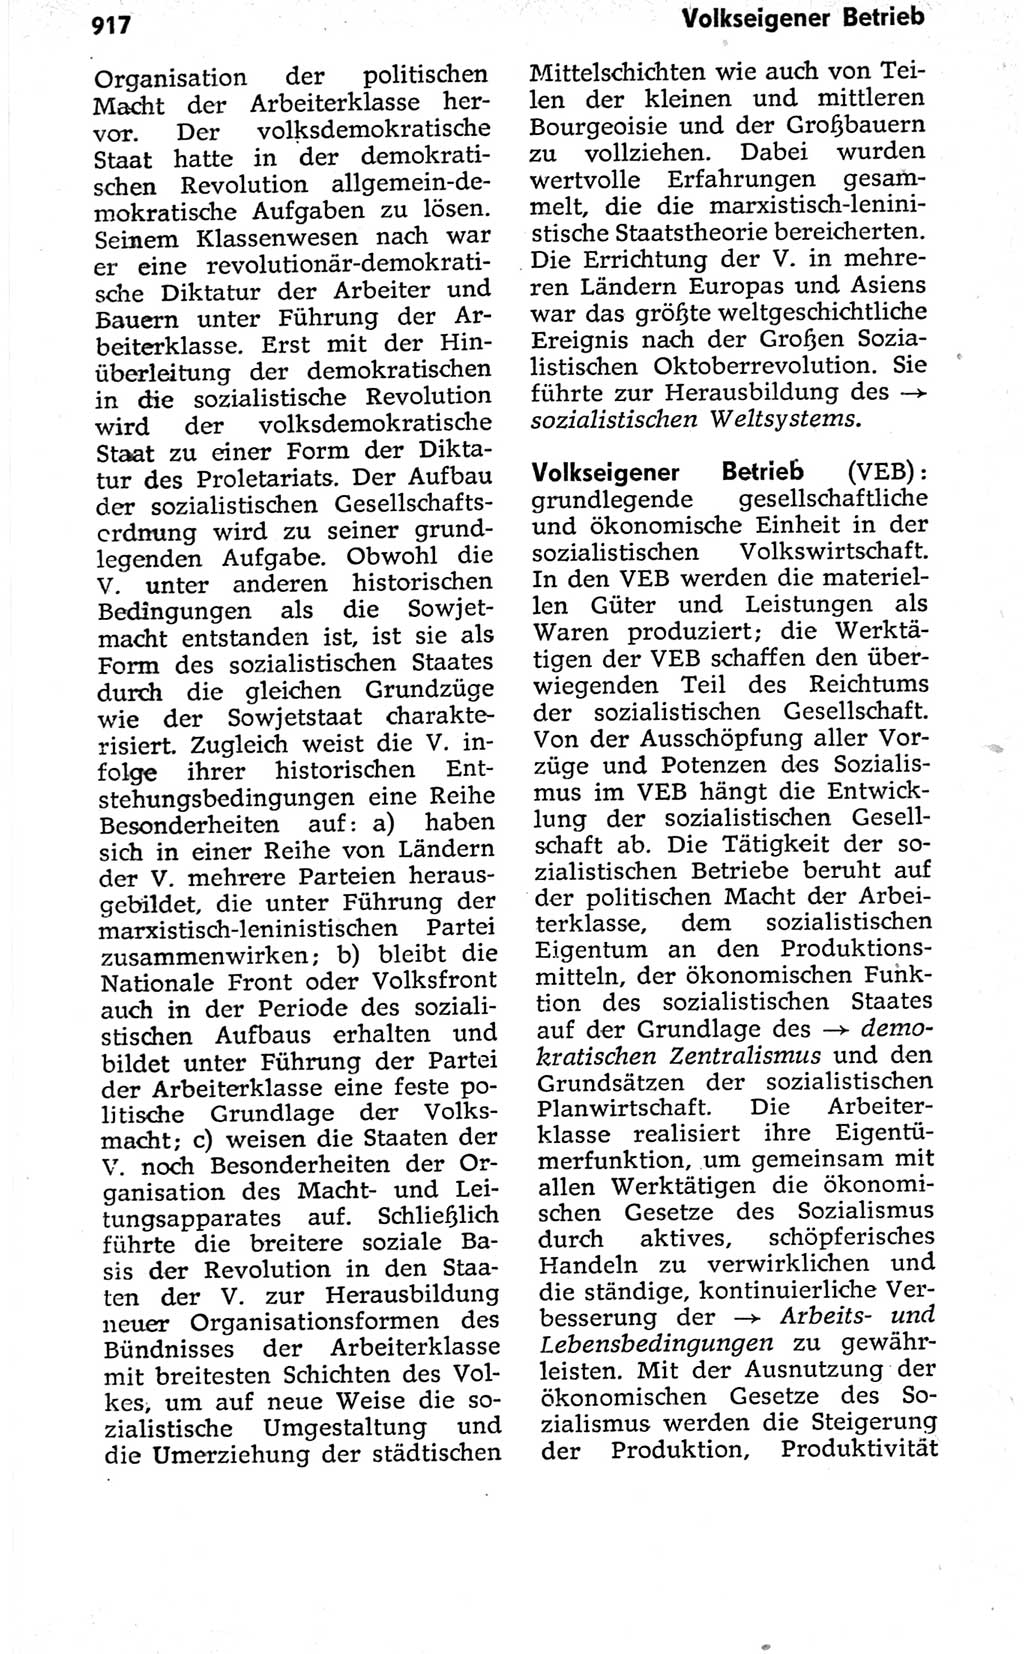 Kleines politisches Wörterbuch [Deutsche Demokratische Republik (DDR)] 1973, Seite 917 (Kl. pol. Wb. DDR 1973, S. 917)